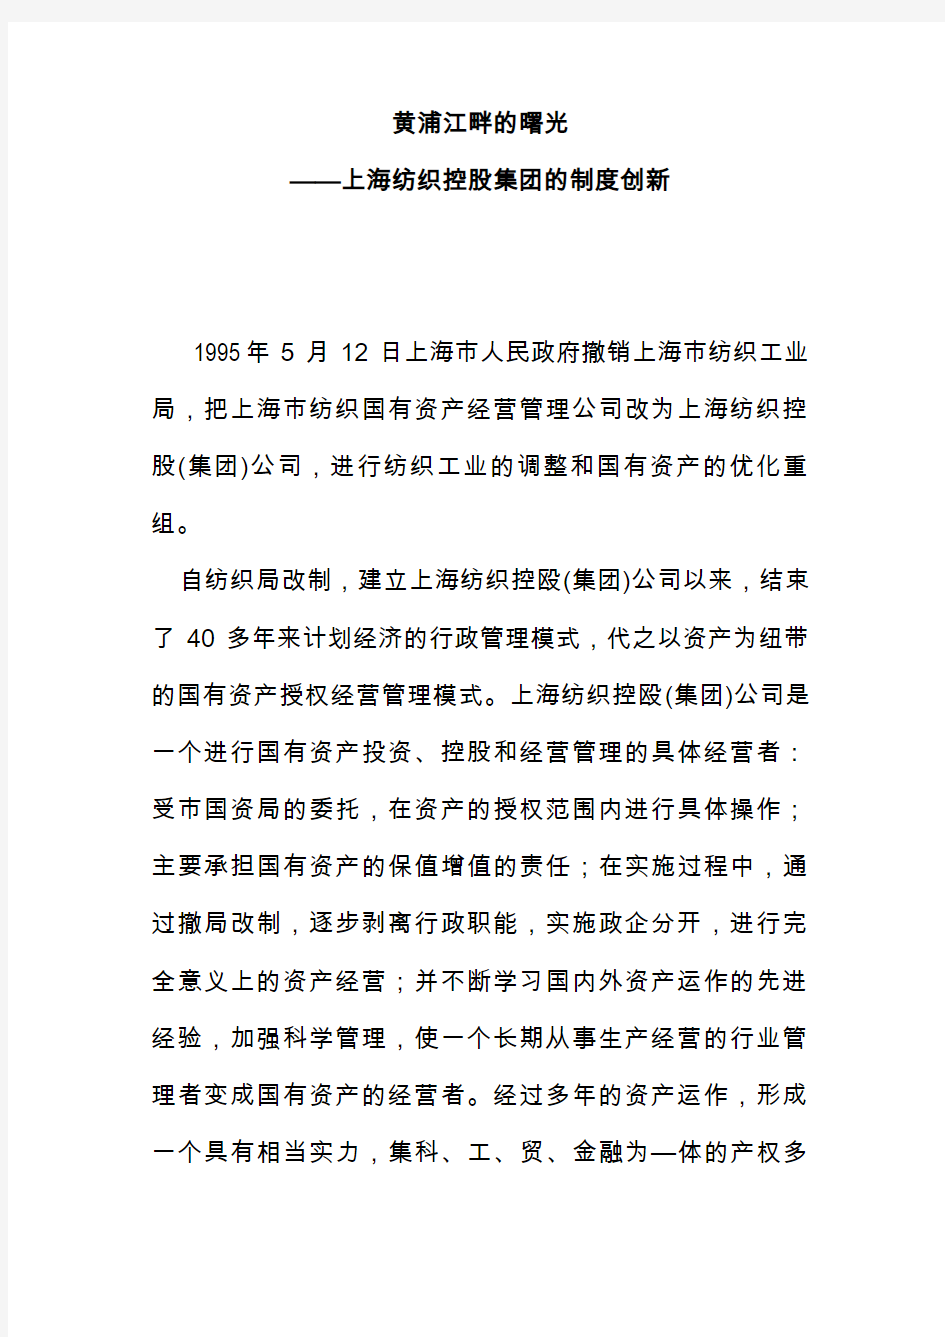 黄浦江畔的曙光——上海纺织控股集团的制度创新